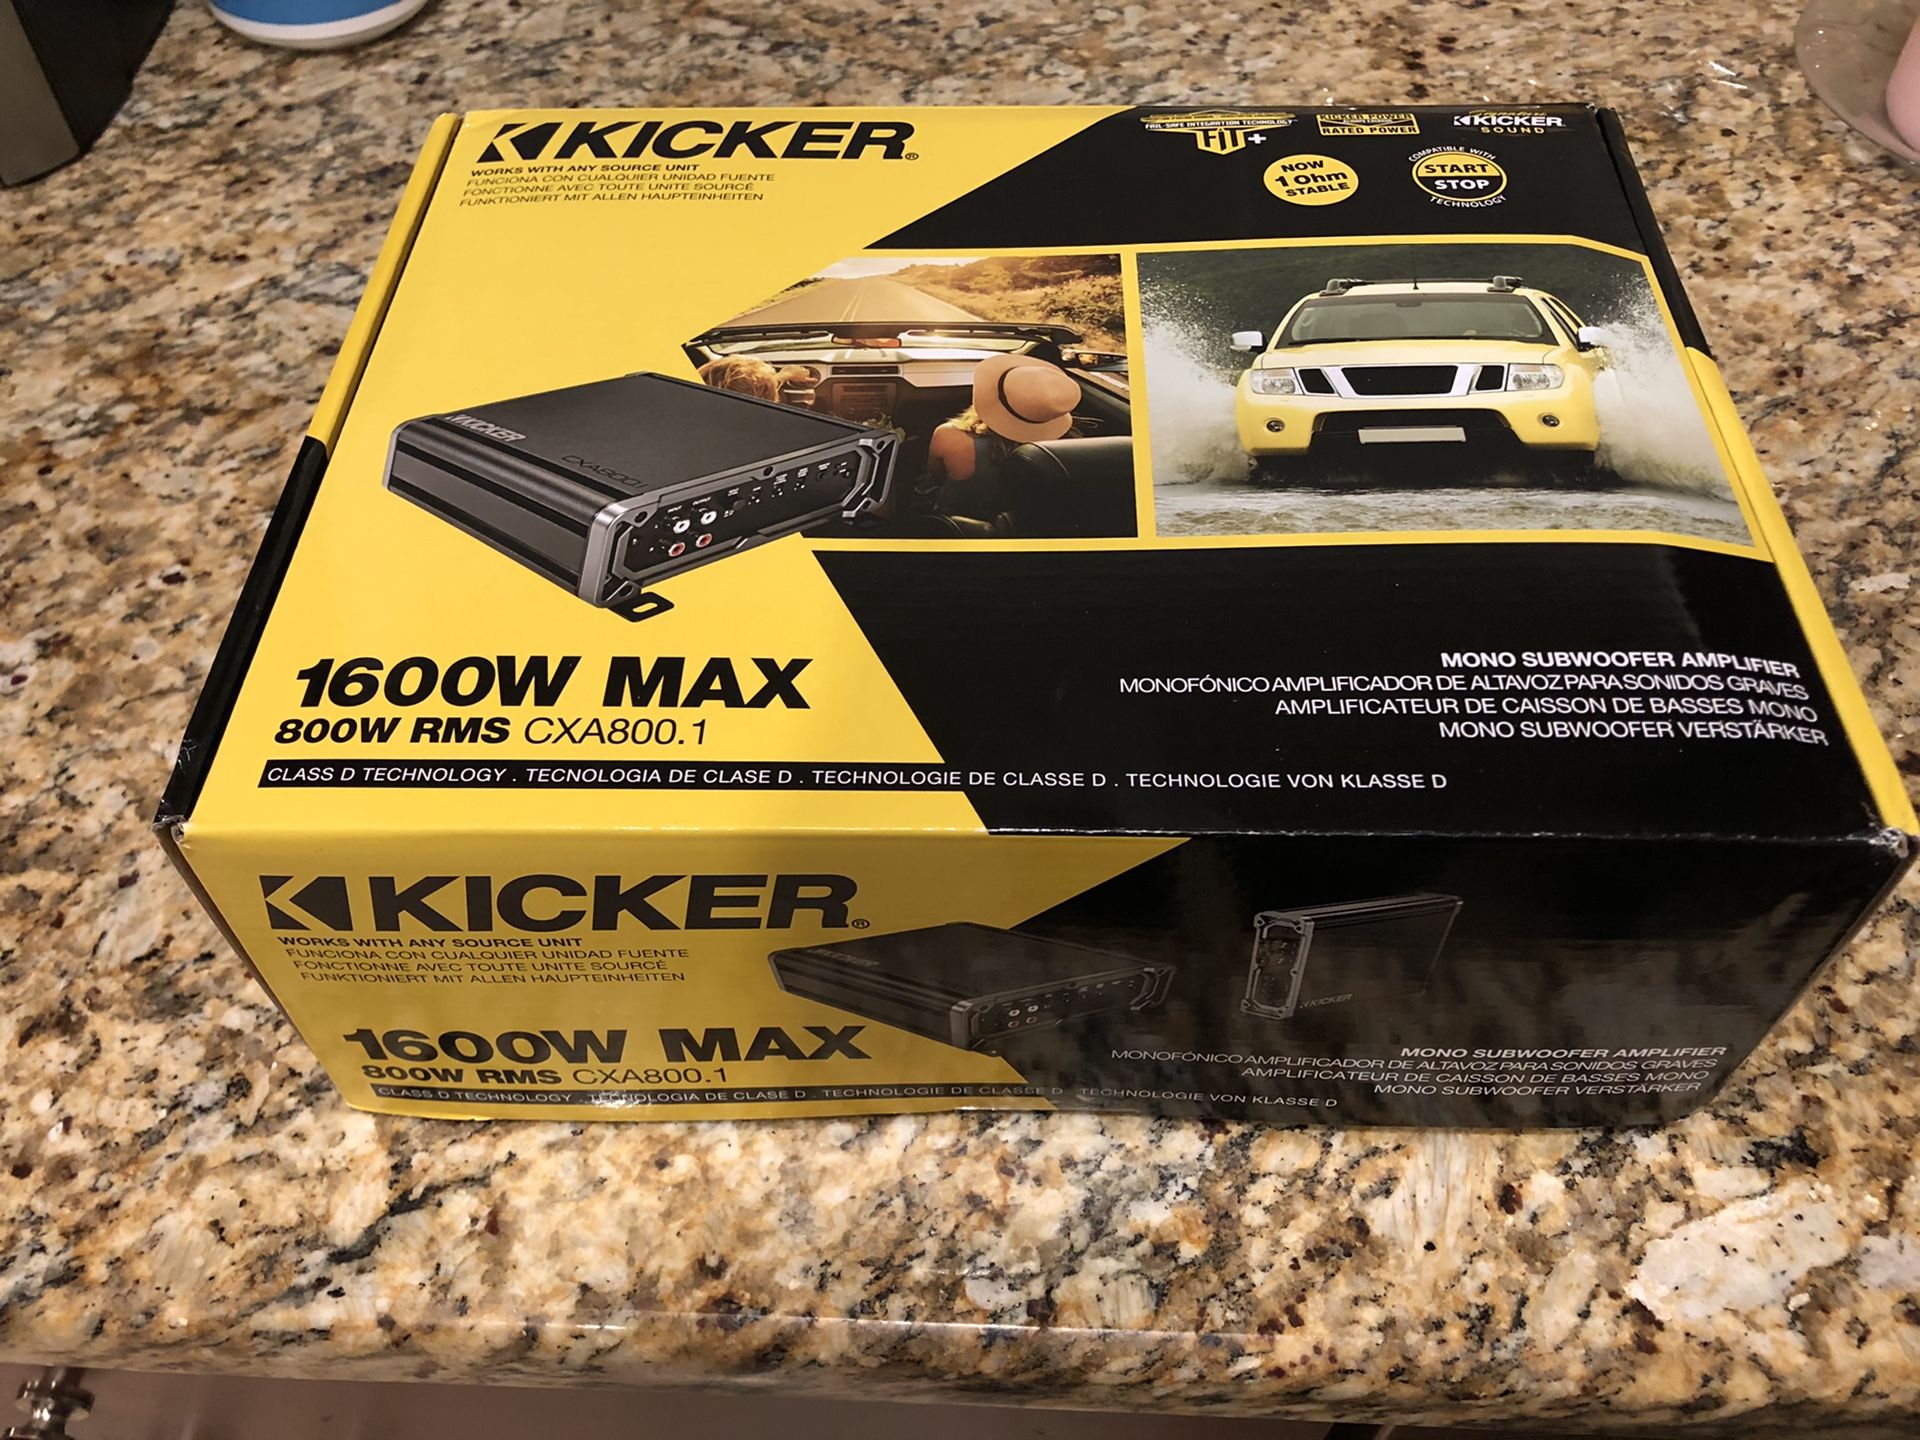 Kicker amp cxa800.1